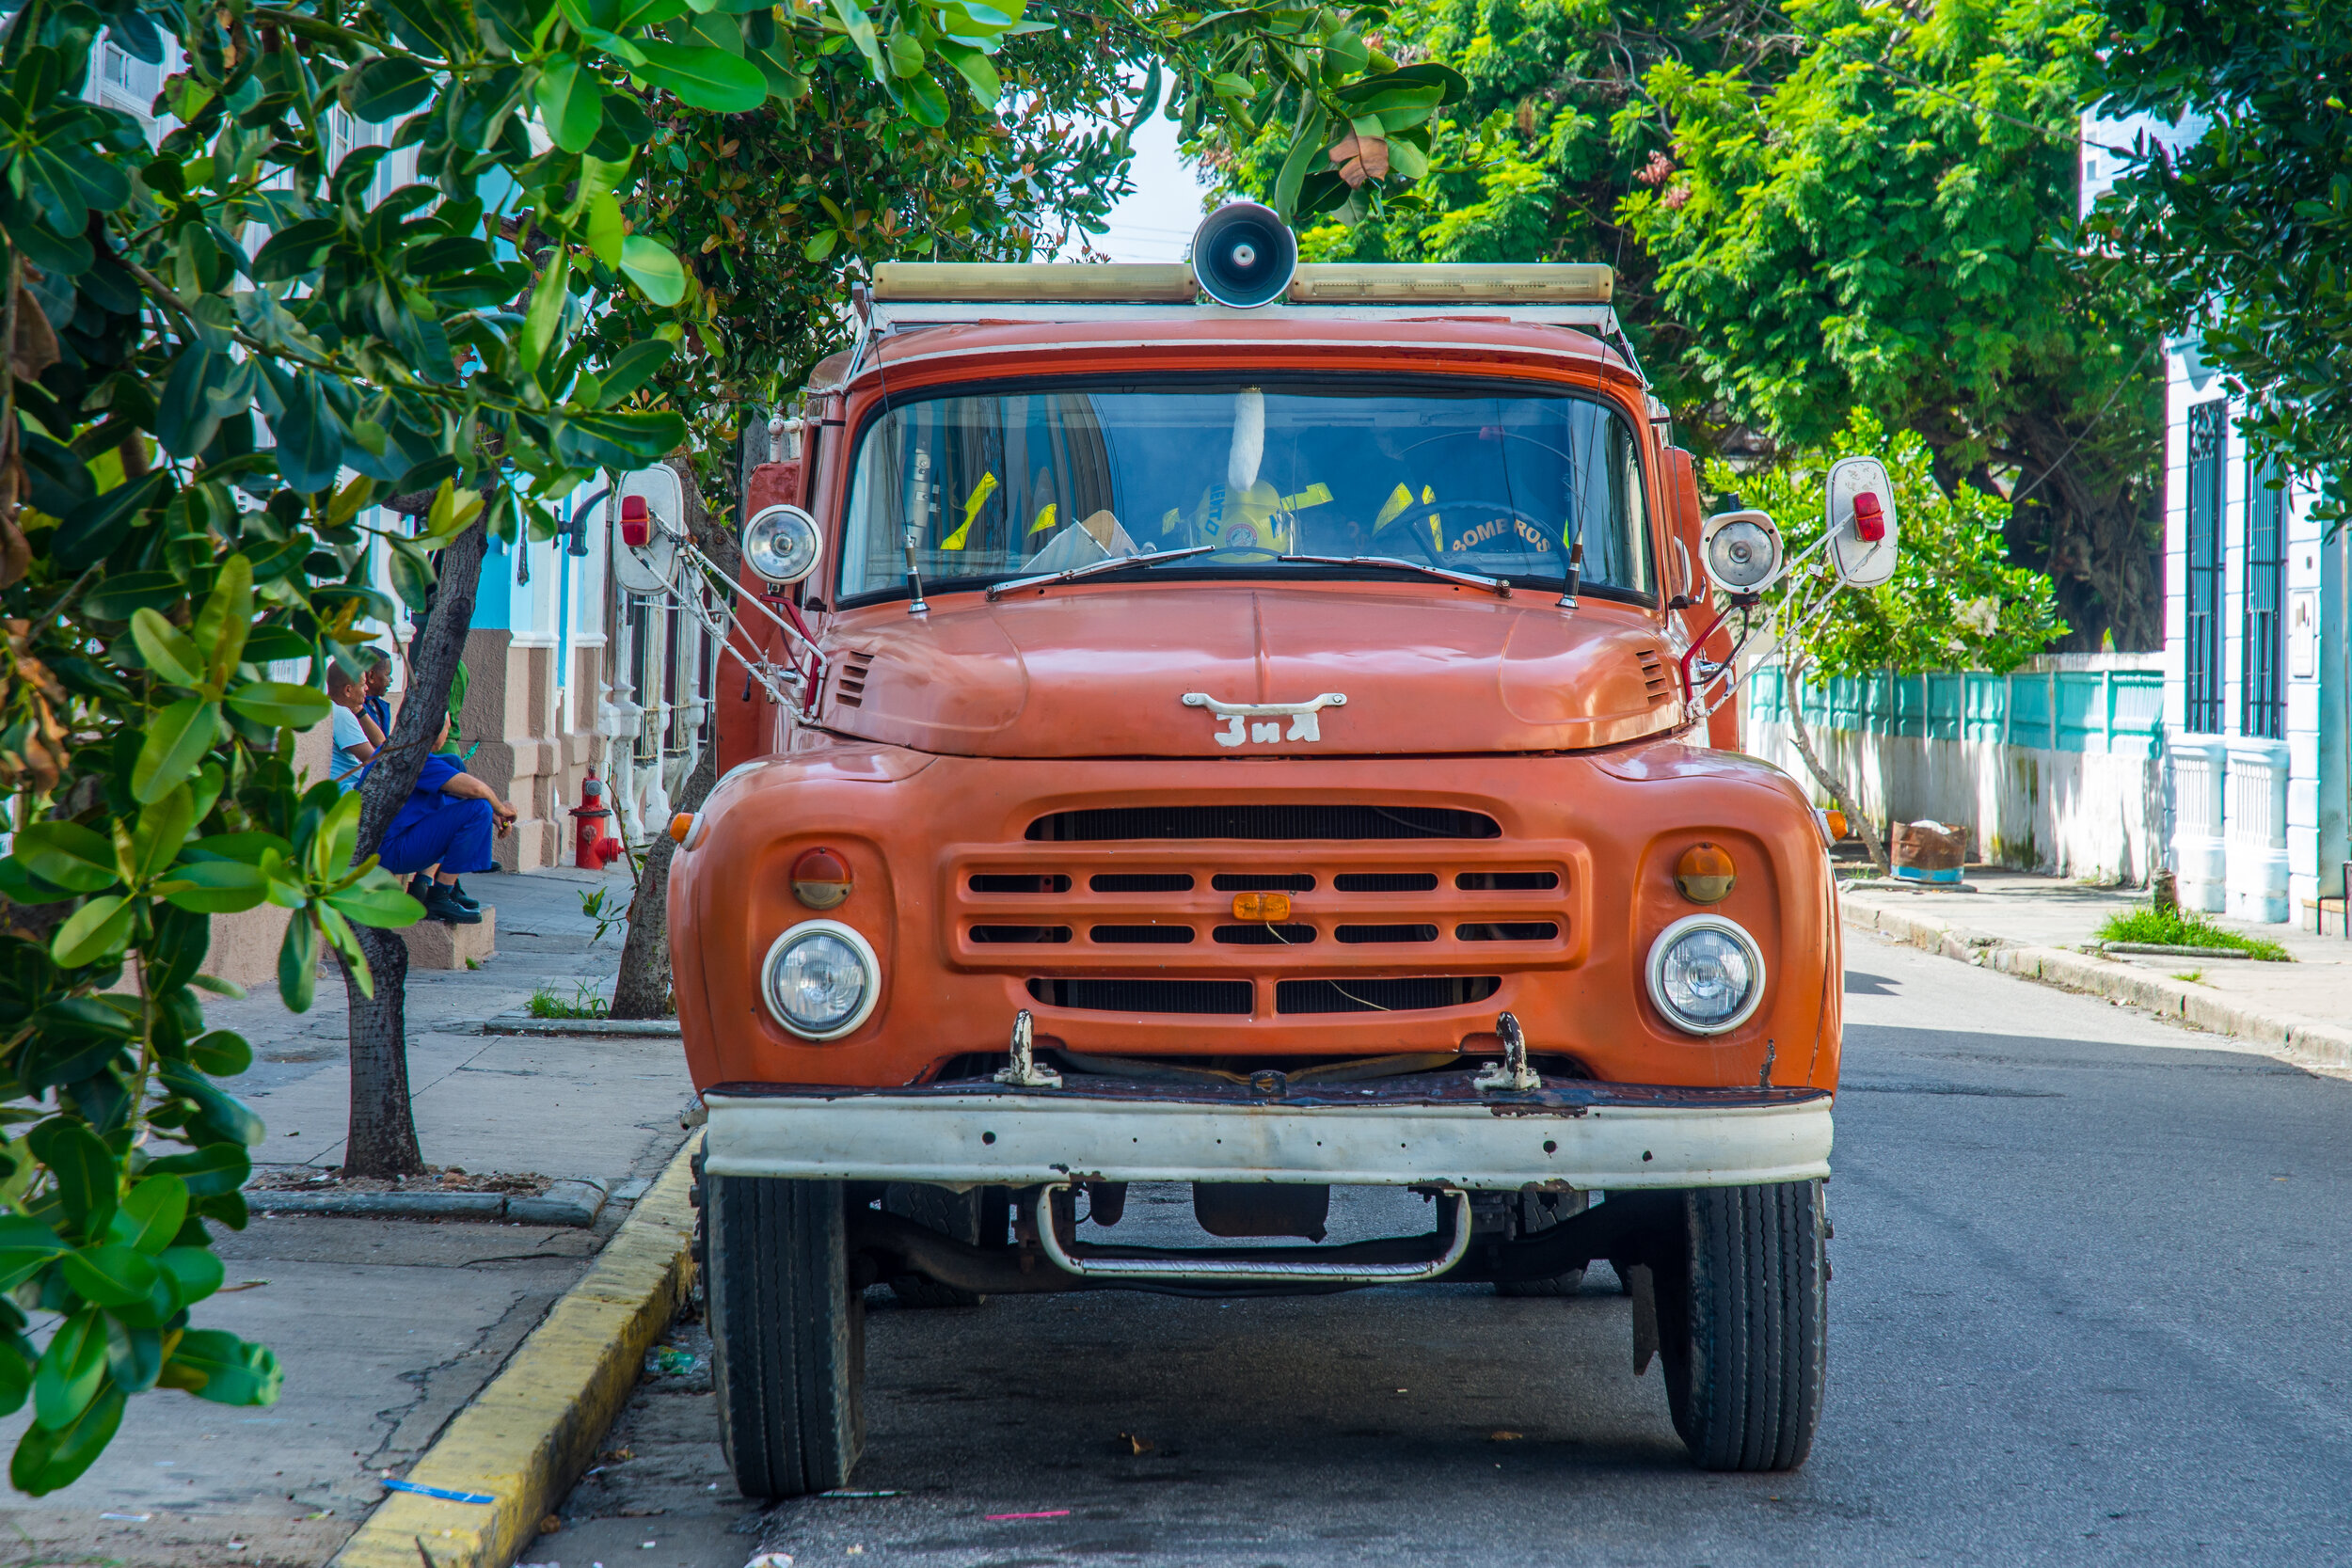   Cienfuegos - Cuba  